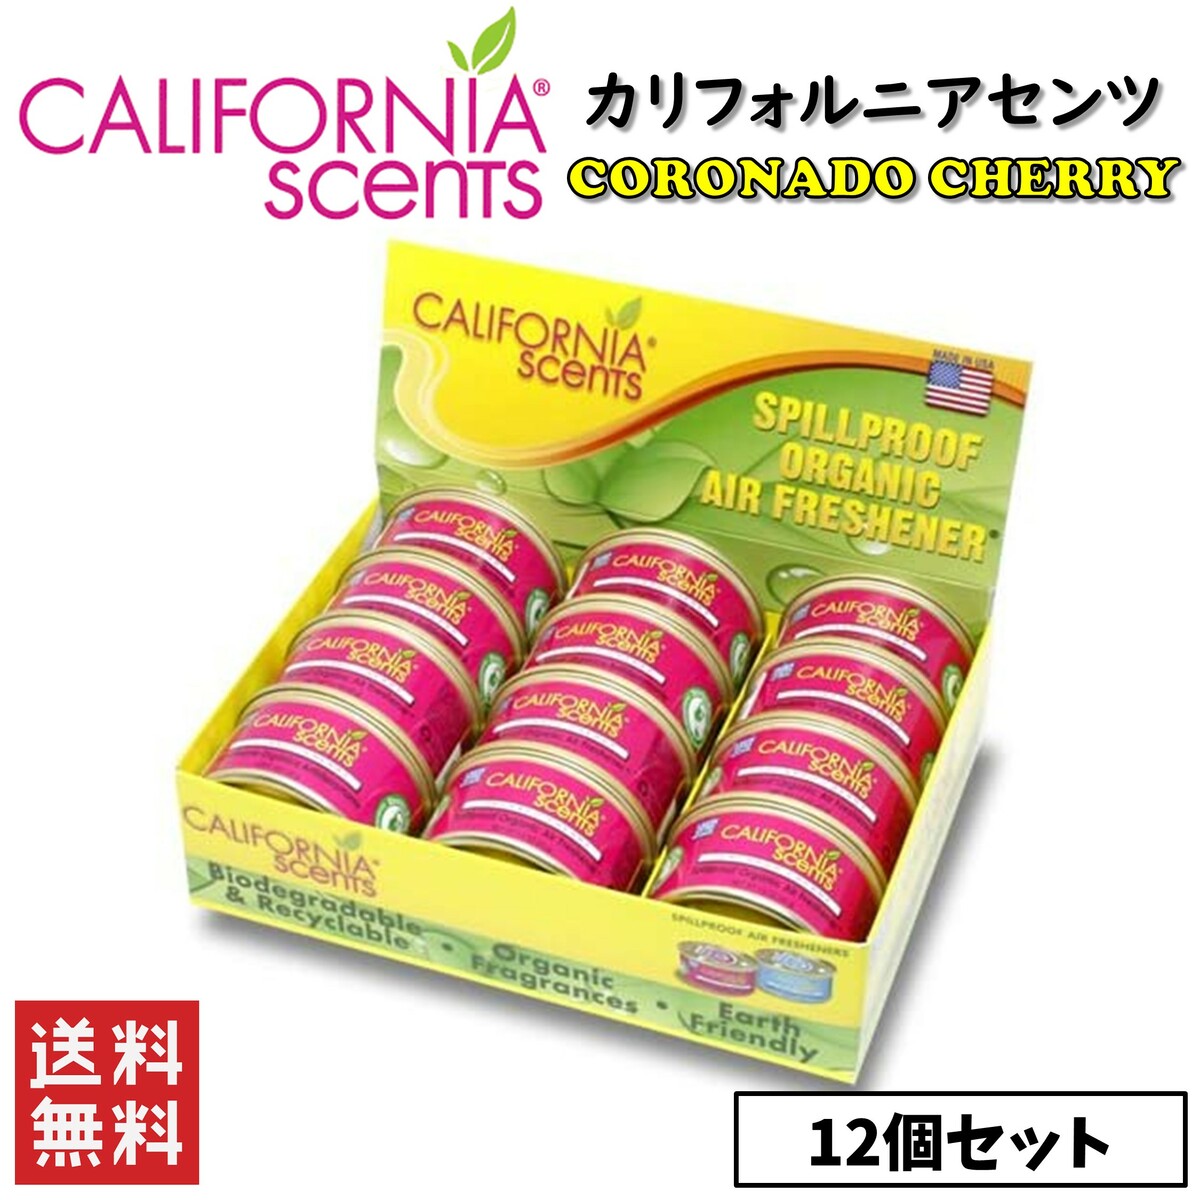 送料無料！ CALIFORNIA SCENTS カリフォルニアセンツ コロナドチェリー 12個セット 缶タイプ エアフレッシュナー 芳香剤 消臭 カー用品